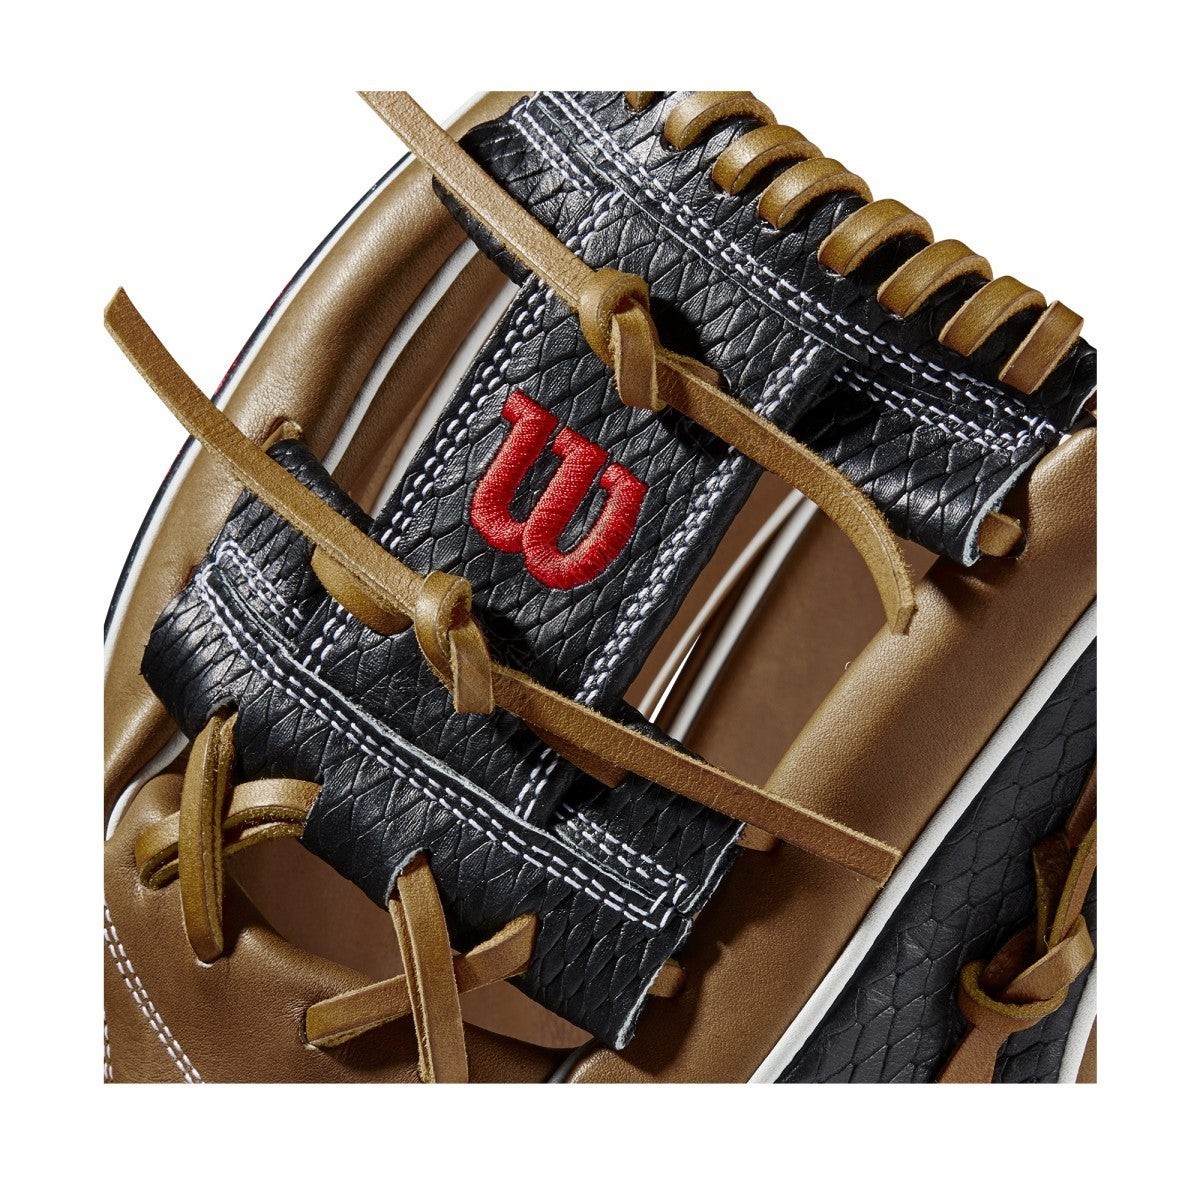 2021 A2K 1787 11.75" Infield Baseball Glove ● Wilson Promotions - -5